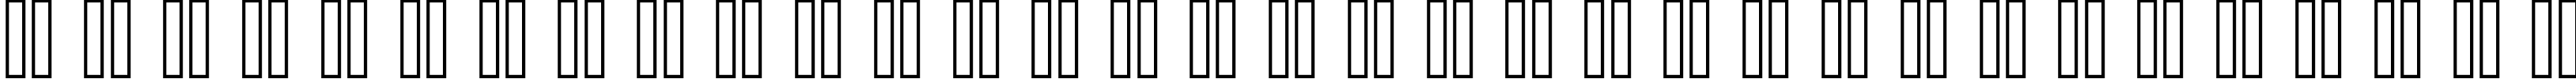 Пример написания русского алфавита шрифтом header 08_66